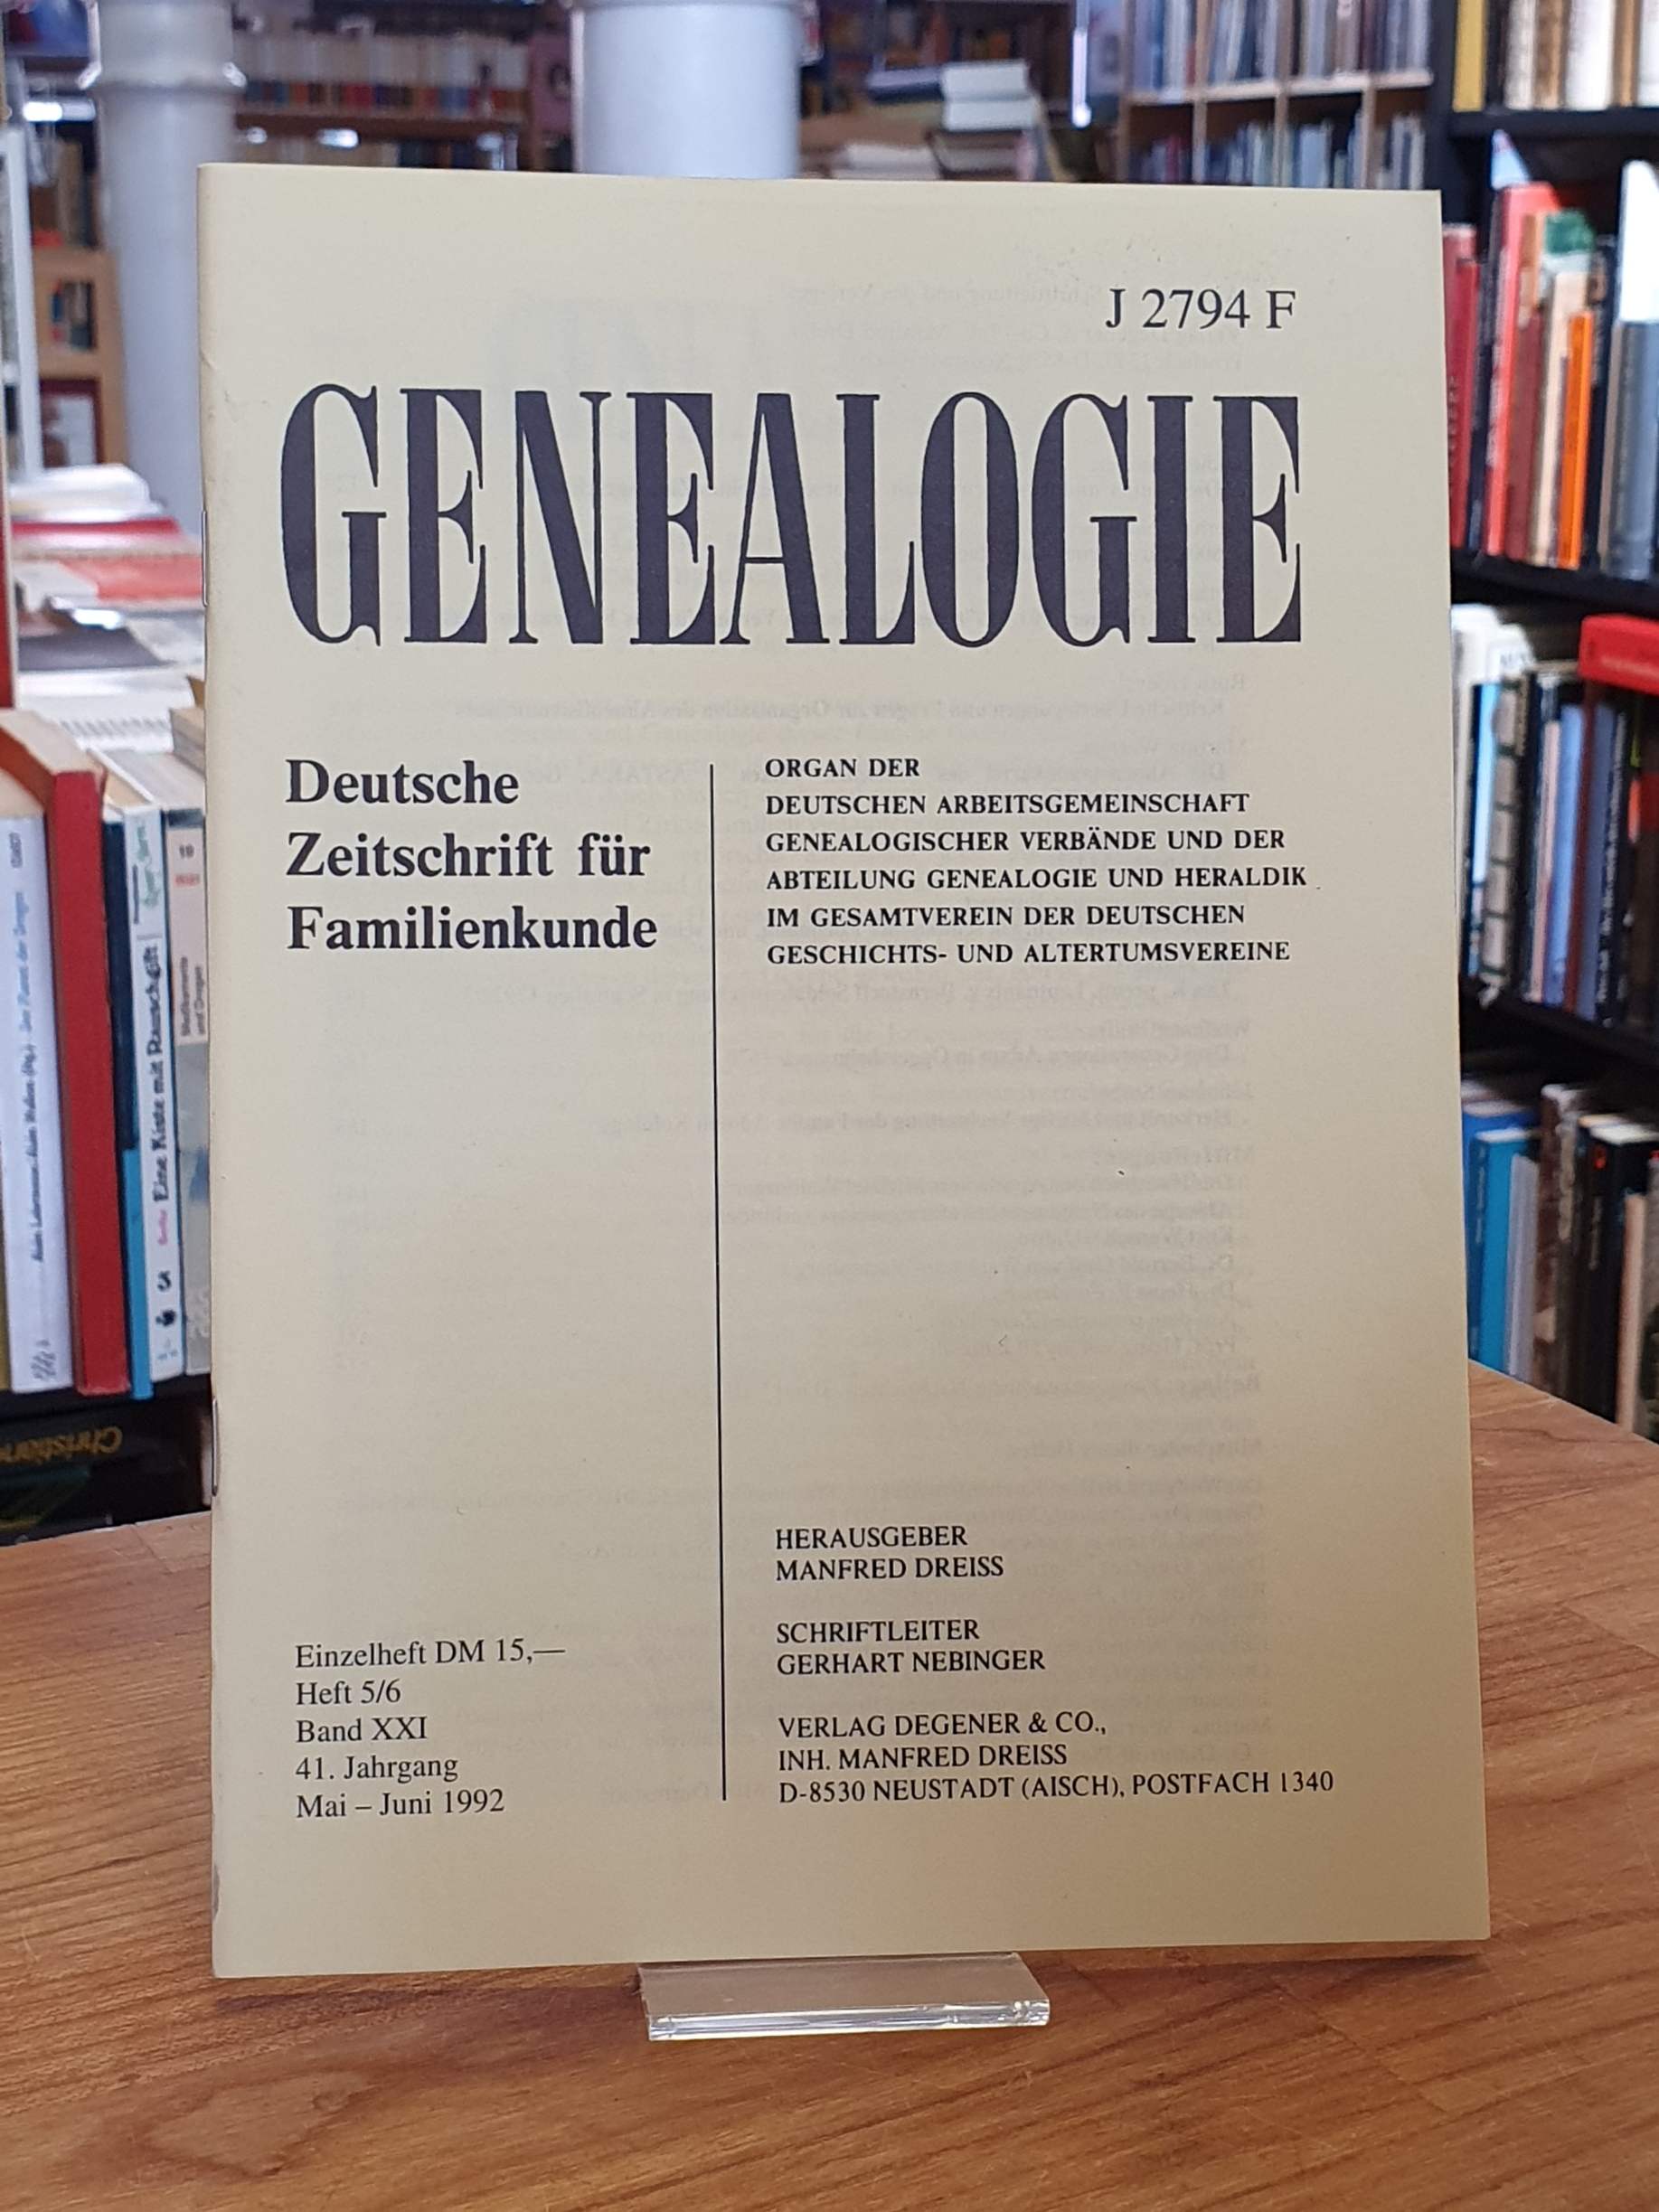 Genealogie – Organ der Deutschen Arbeitsgemeinschaft Genealogischer Verbände,